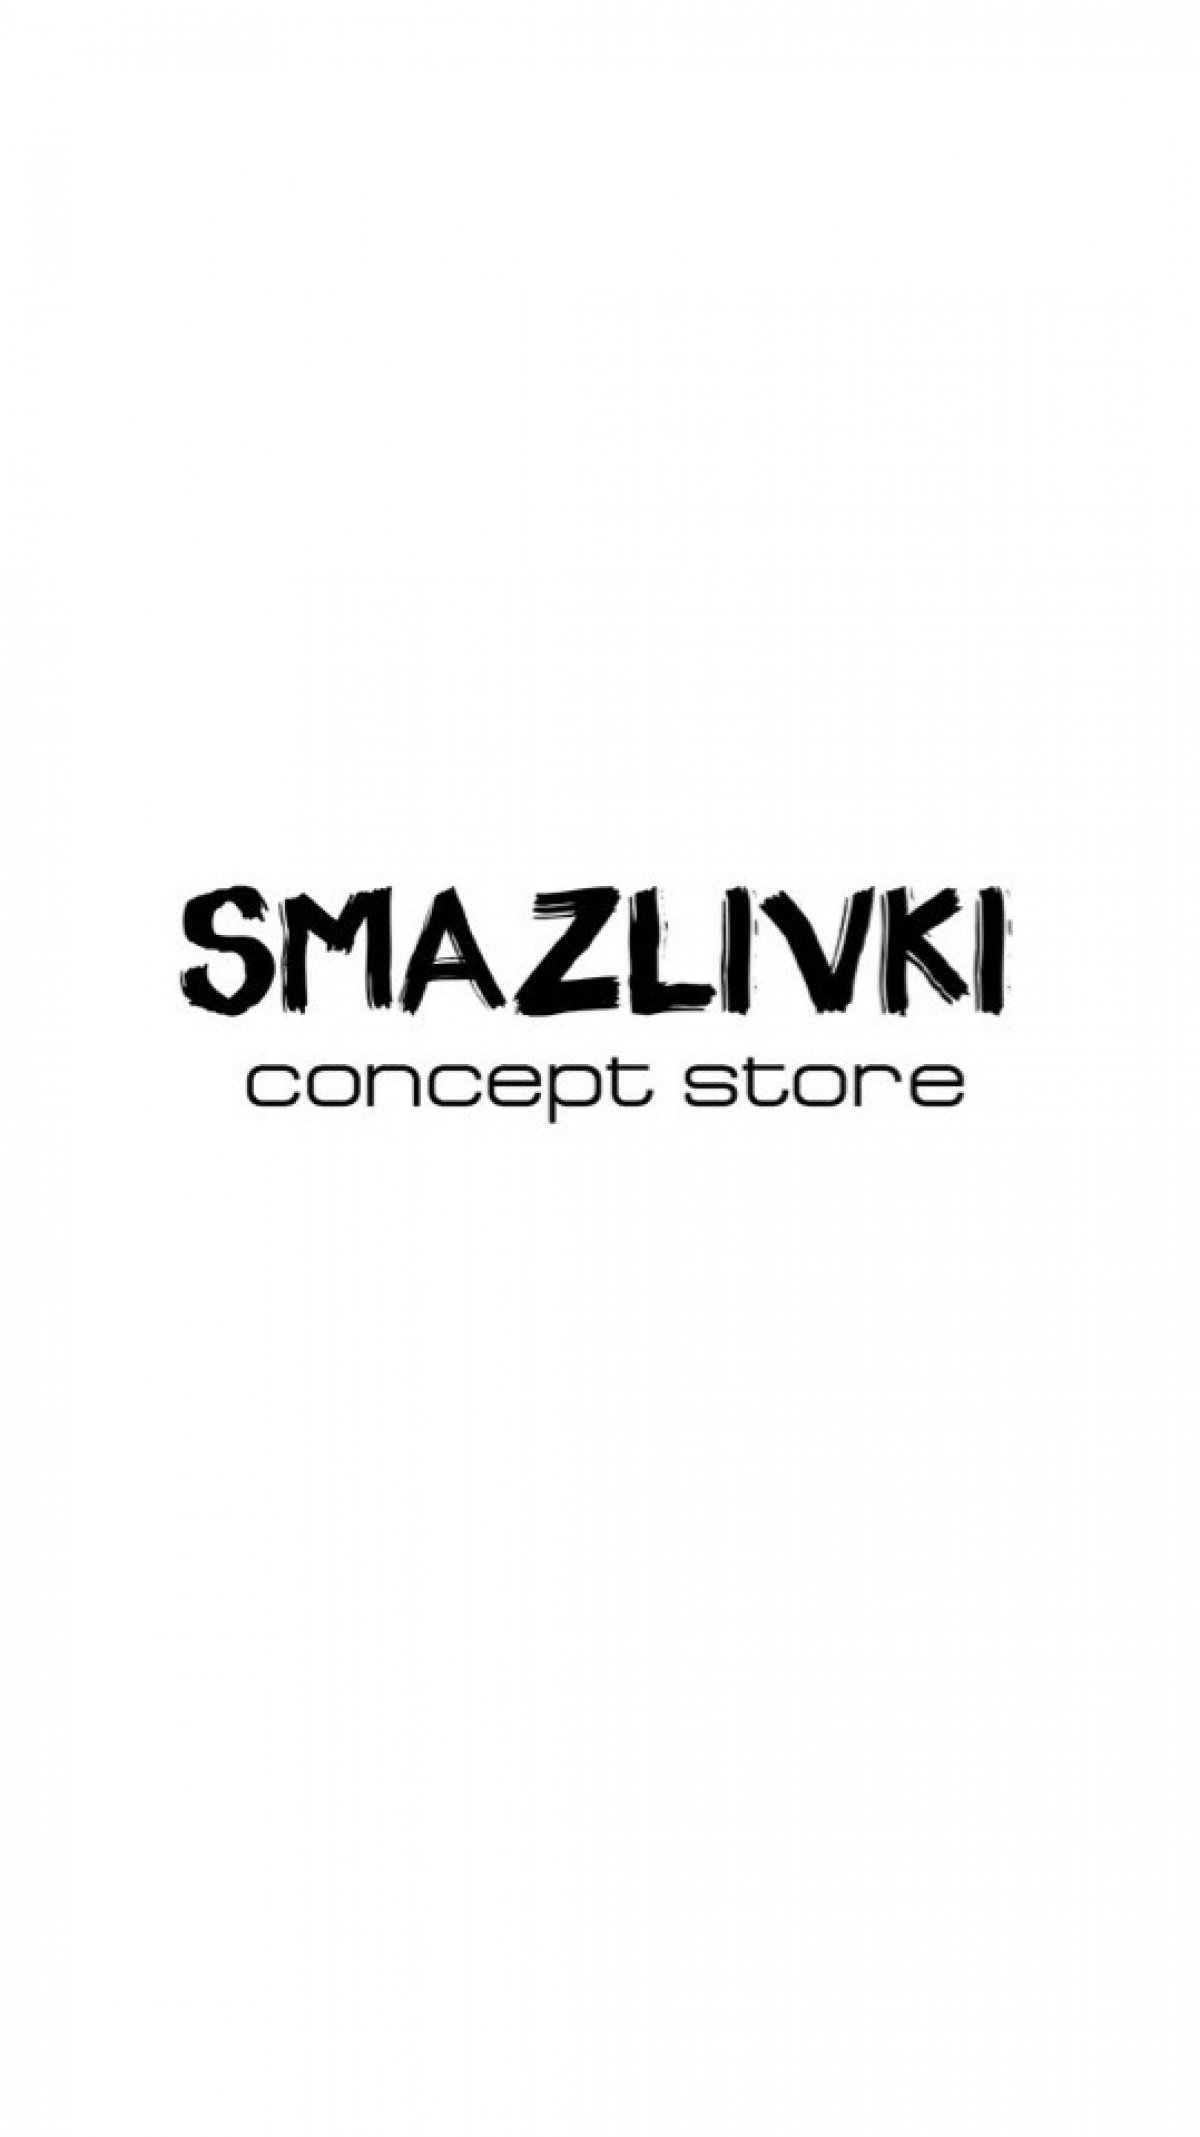 Наш следующий партнер, сделающий вас самыми стильными - SMAZLIVKI concept store